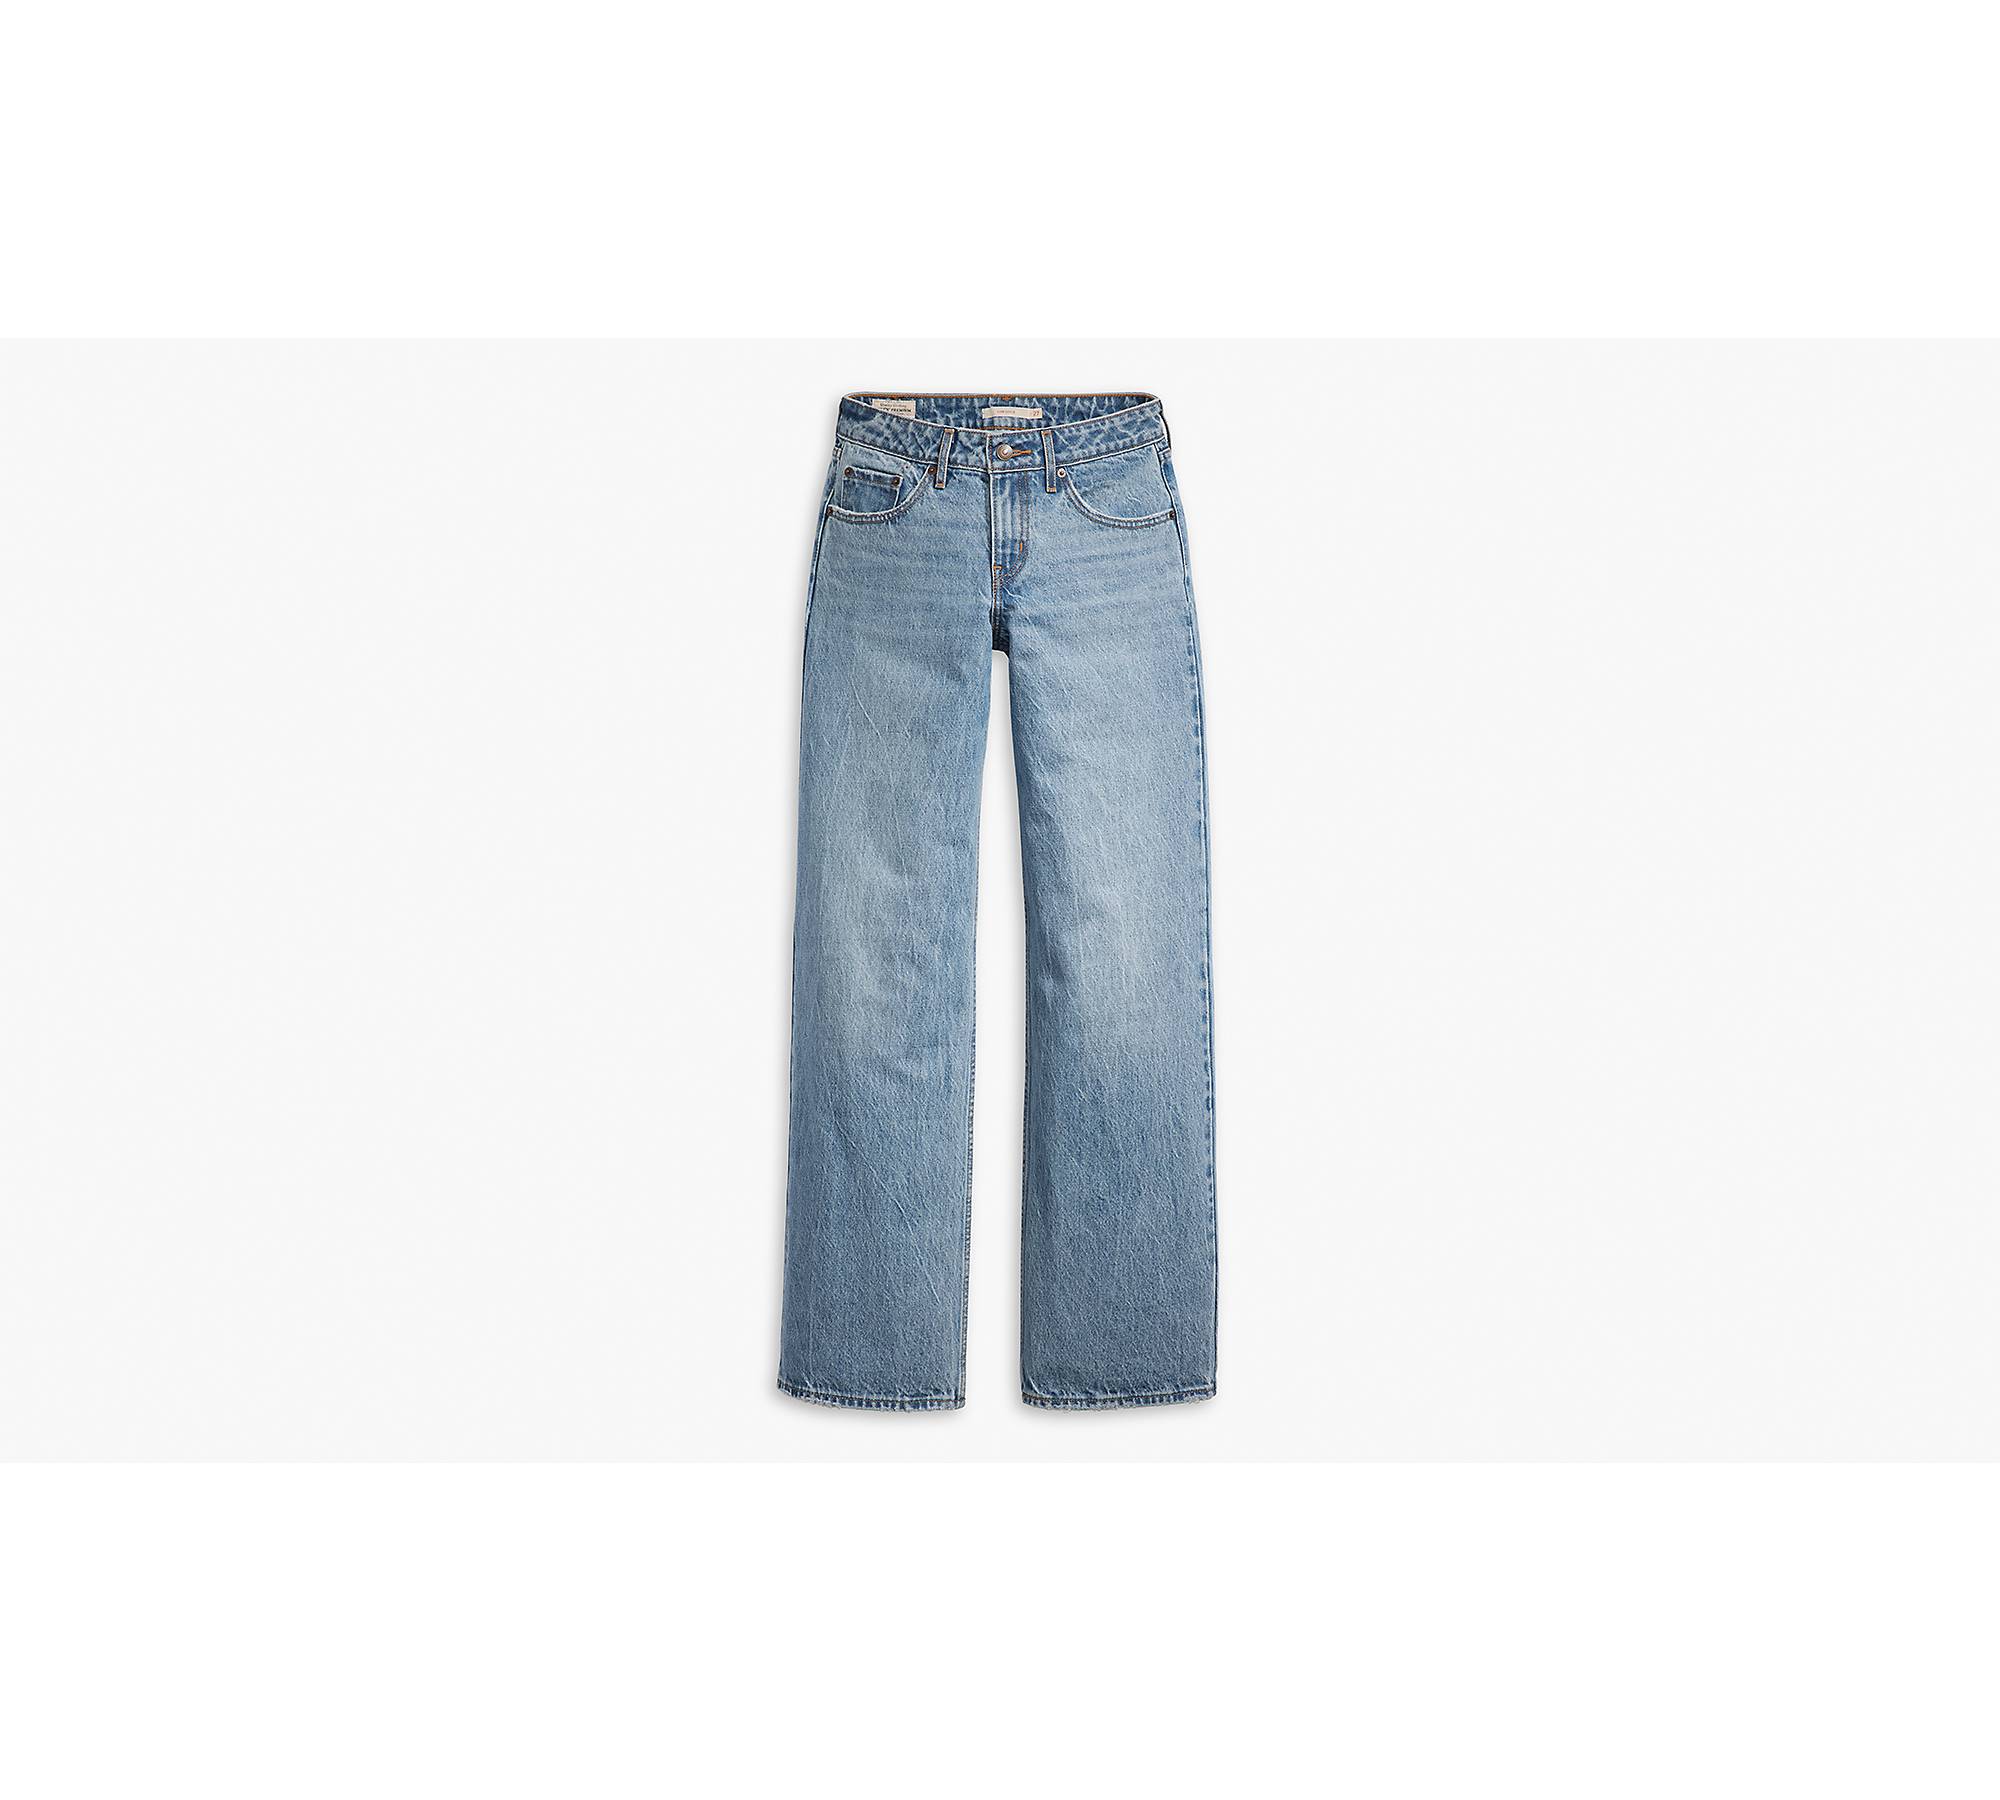 Levi's Low Loose Women's Jeans - Good Grades 24 x 34